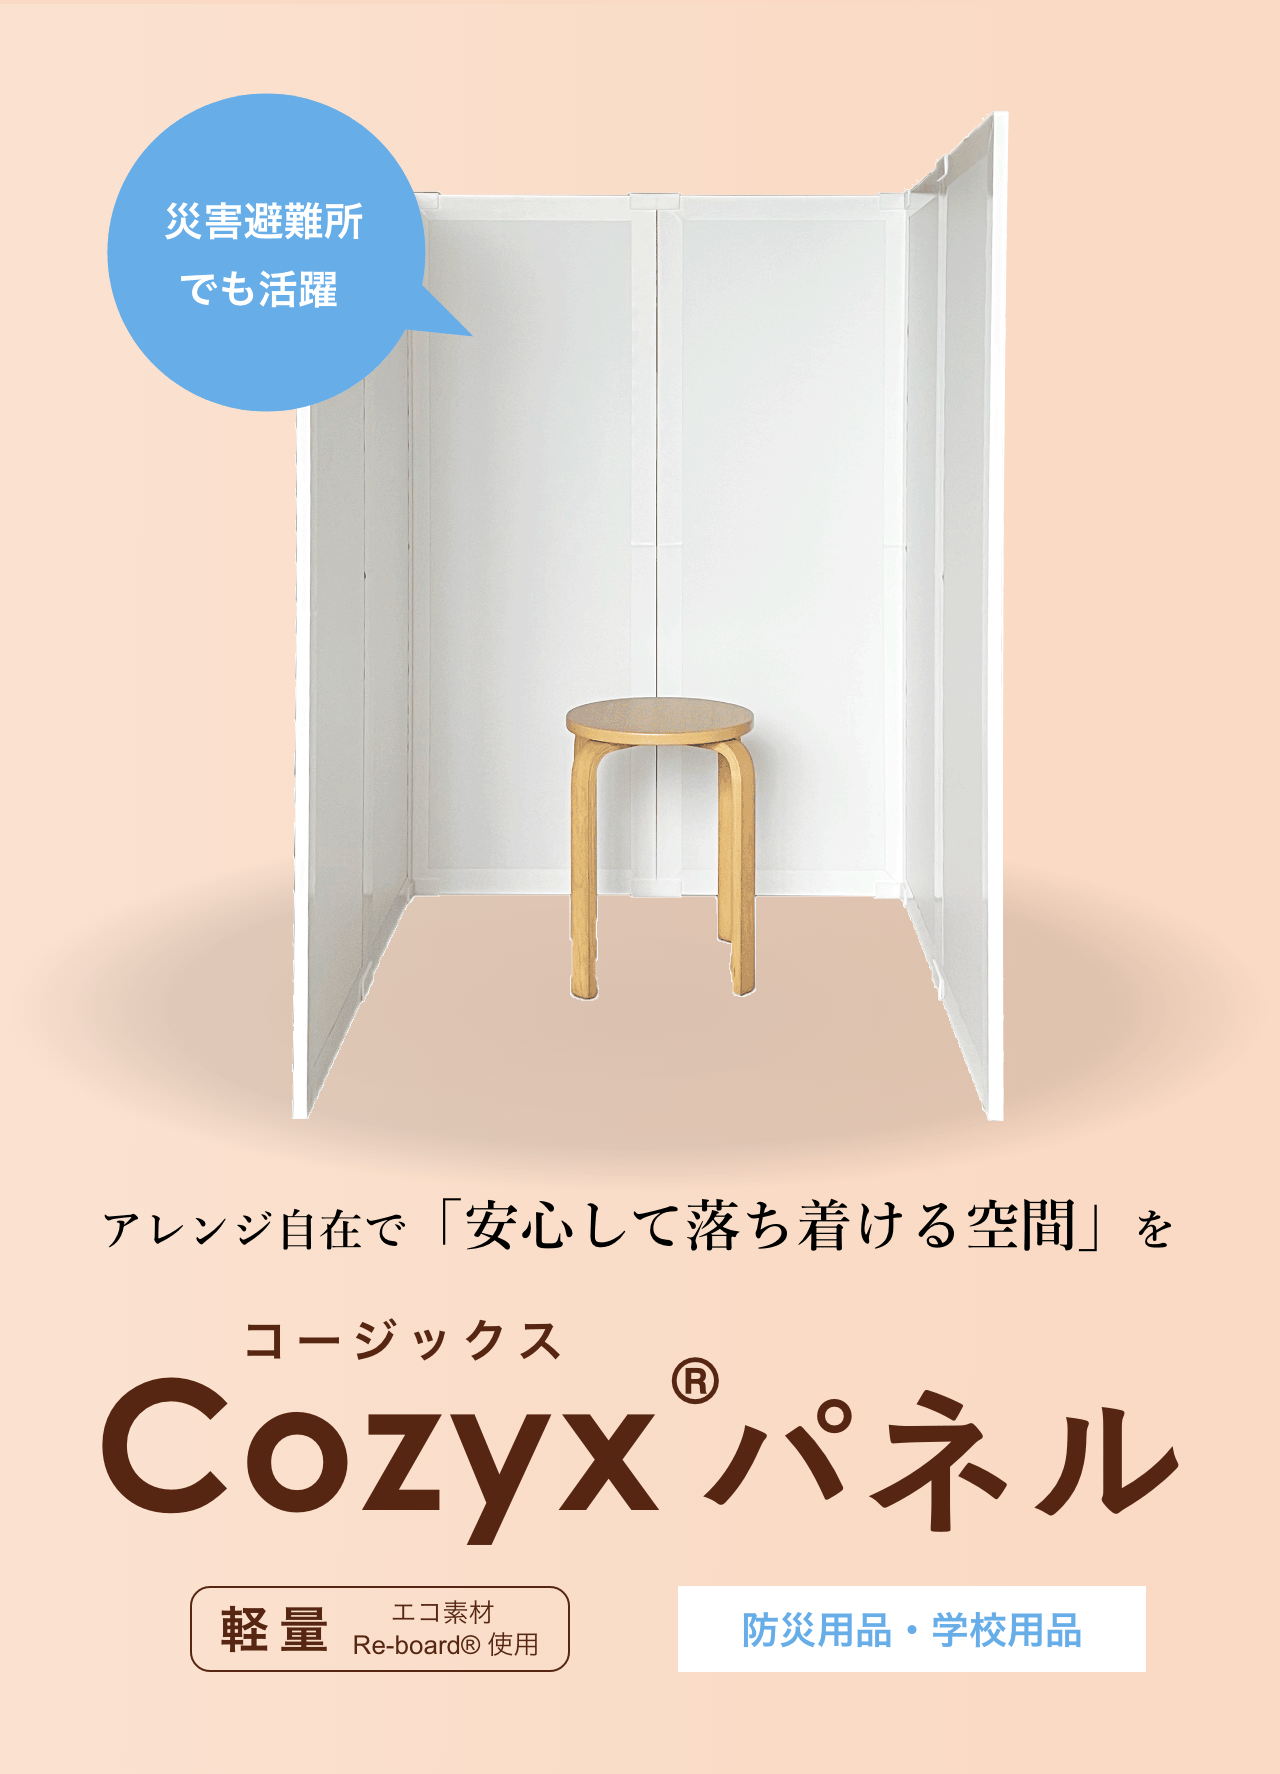 「Cozyx パネル」